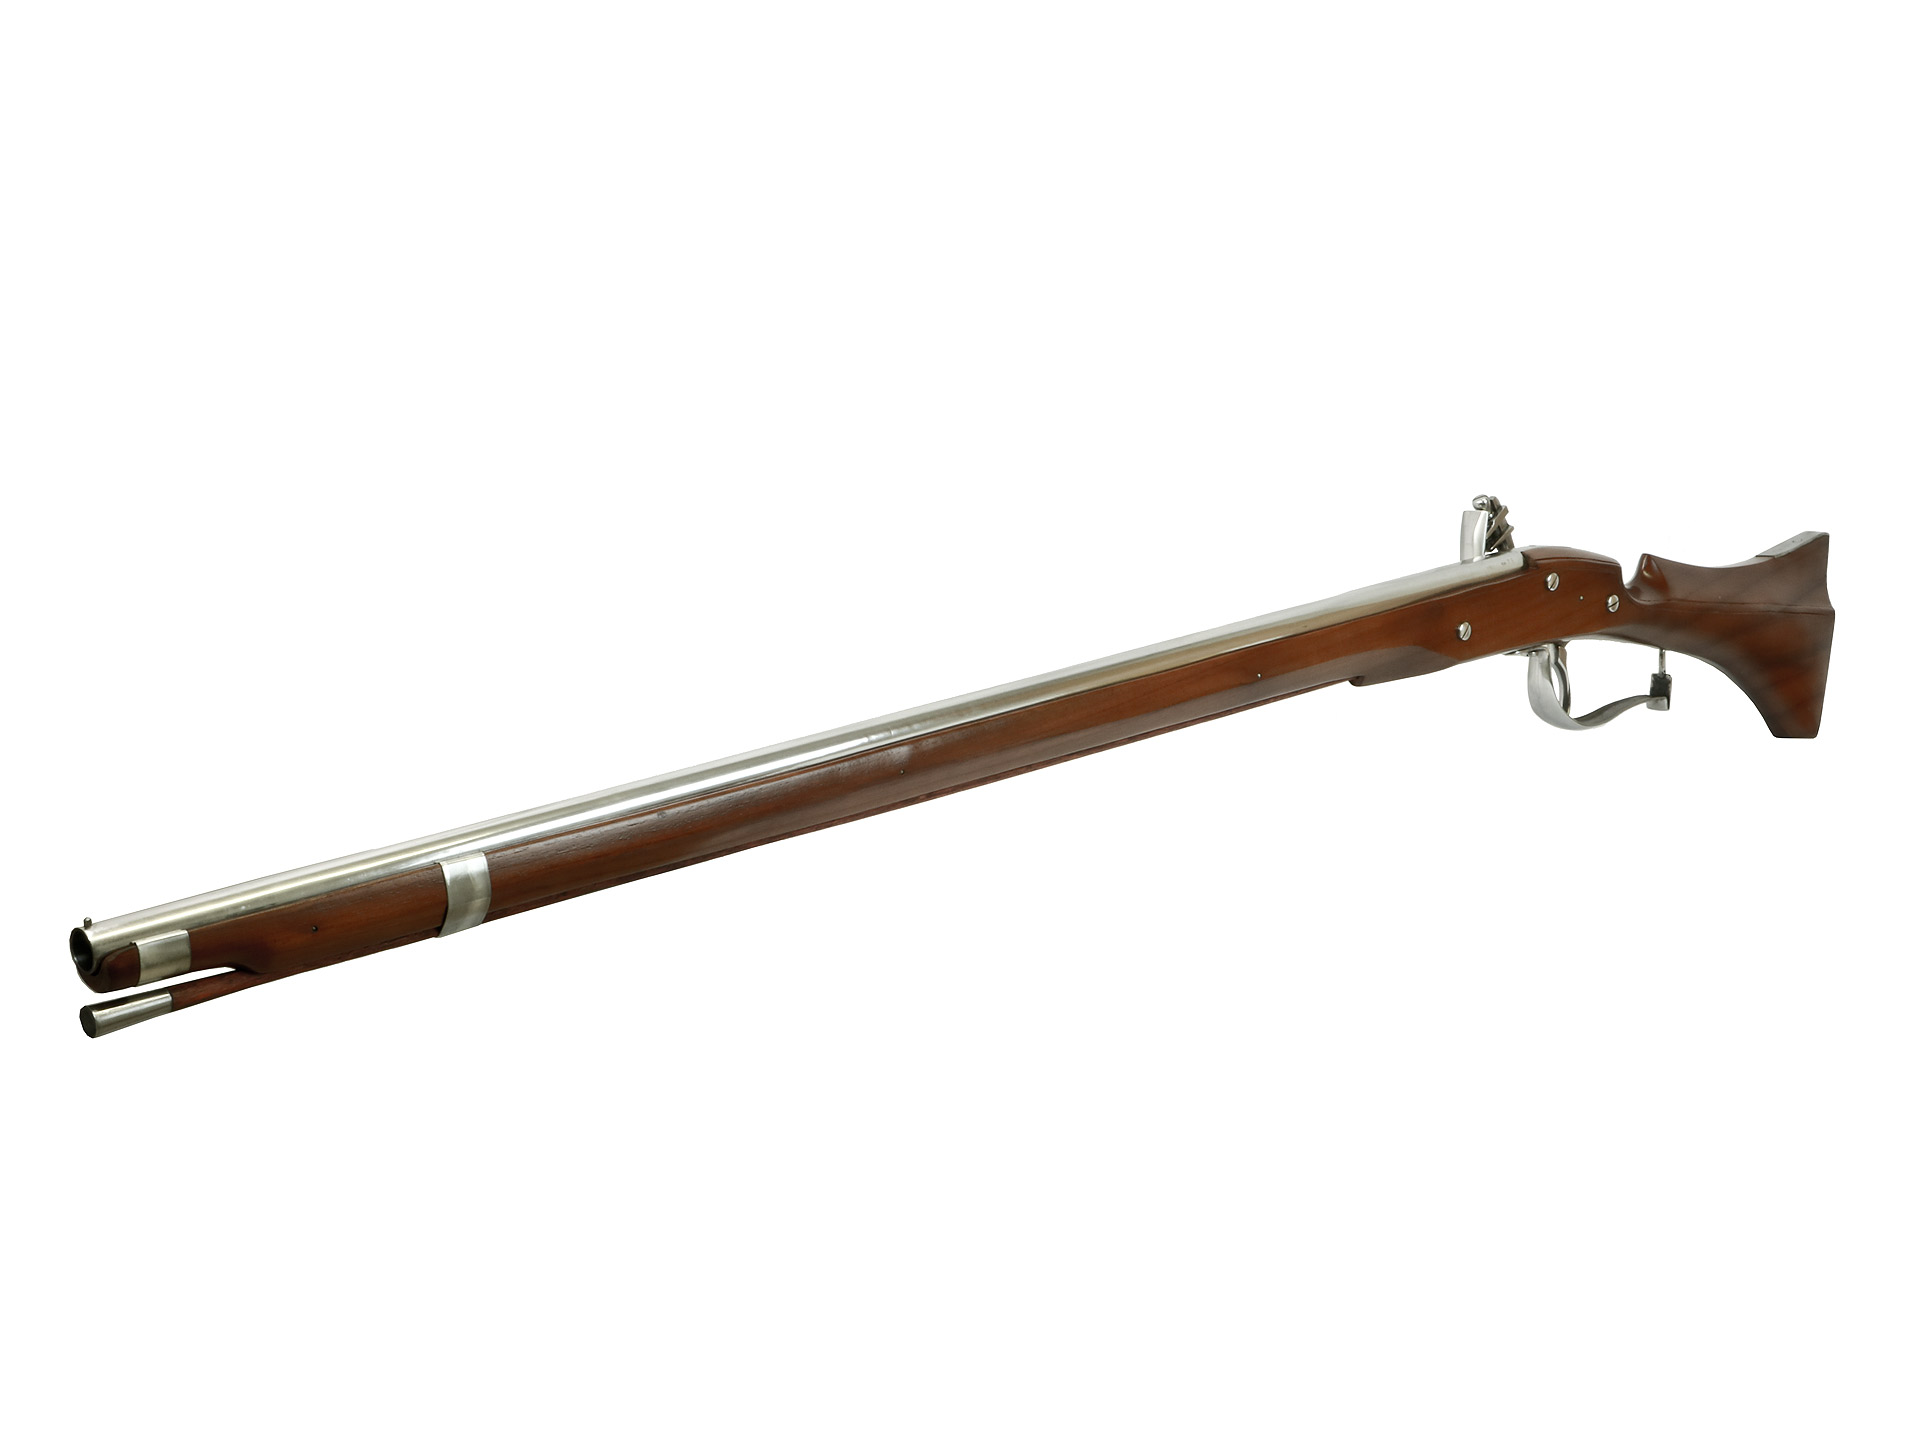 Vorderlader Steinschlossgewehr English Lock Fishtail Fowler Muskete, Kaliber .75 bzw. 19 mm (P18)